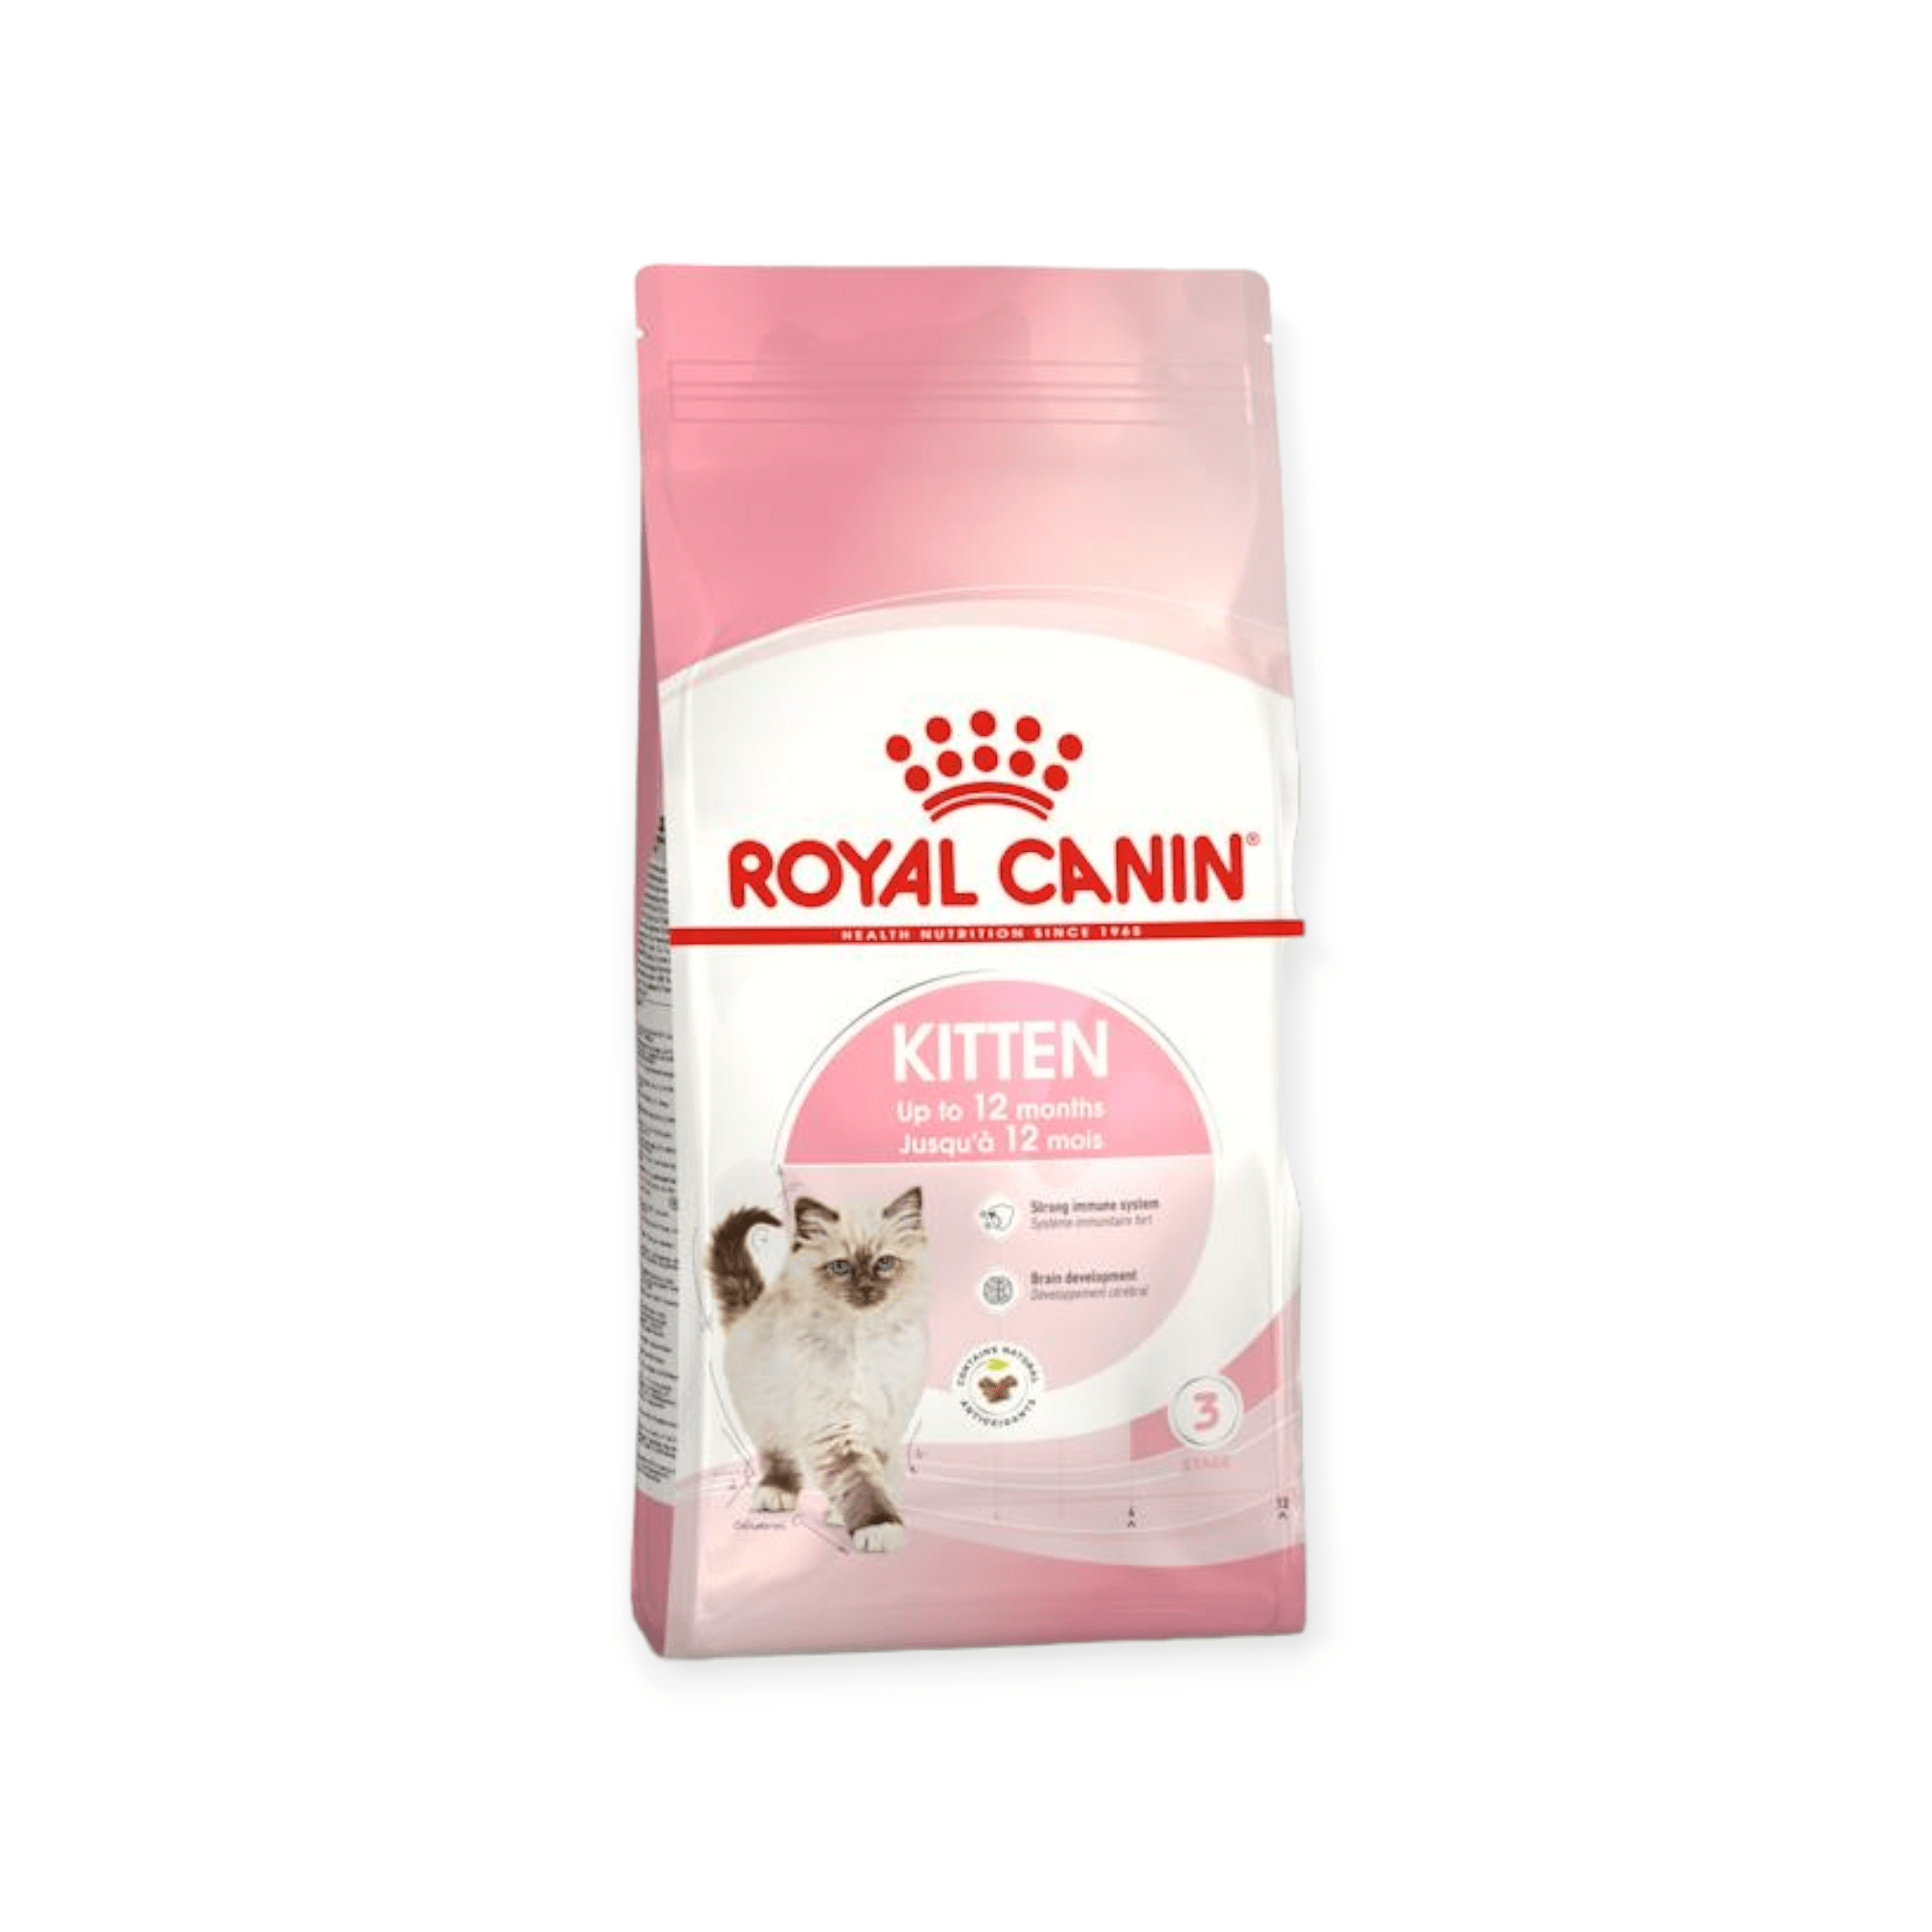 Royal Canin Kitten Dry